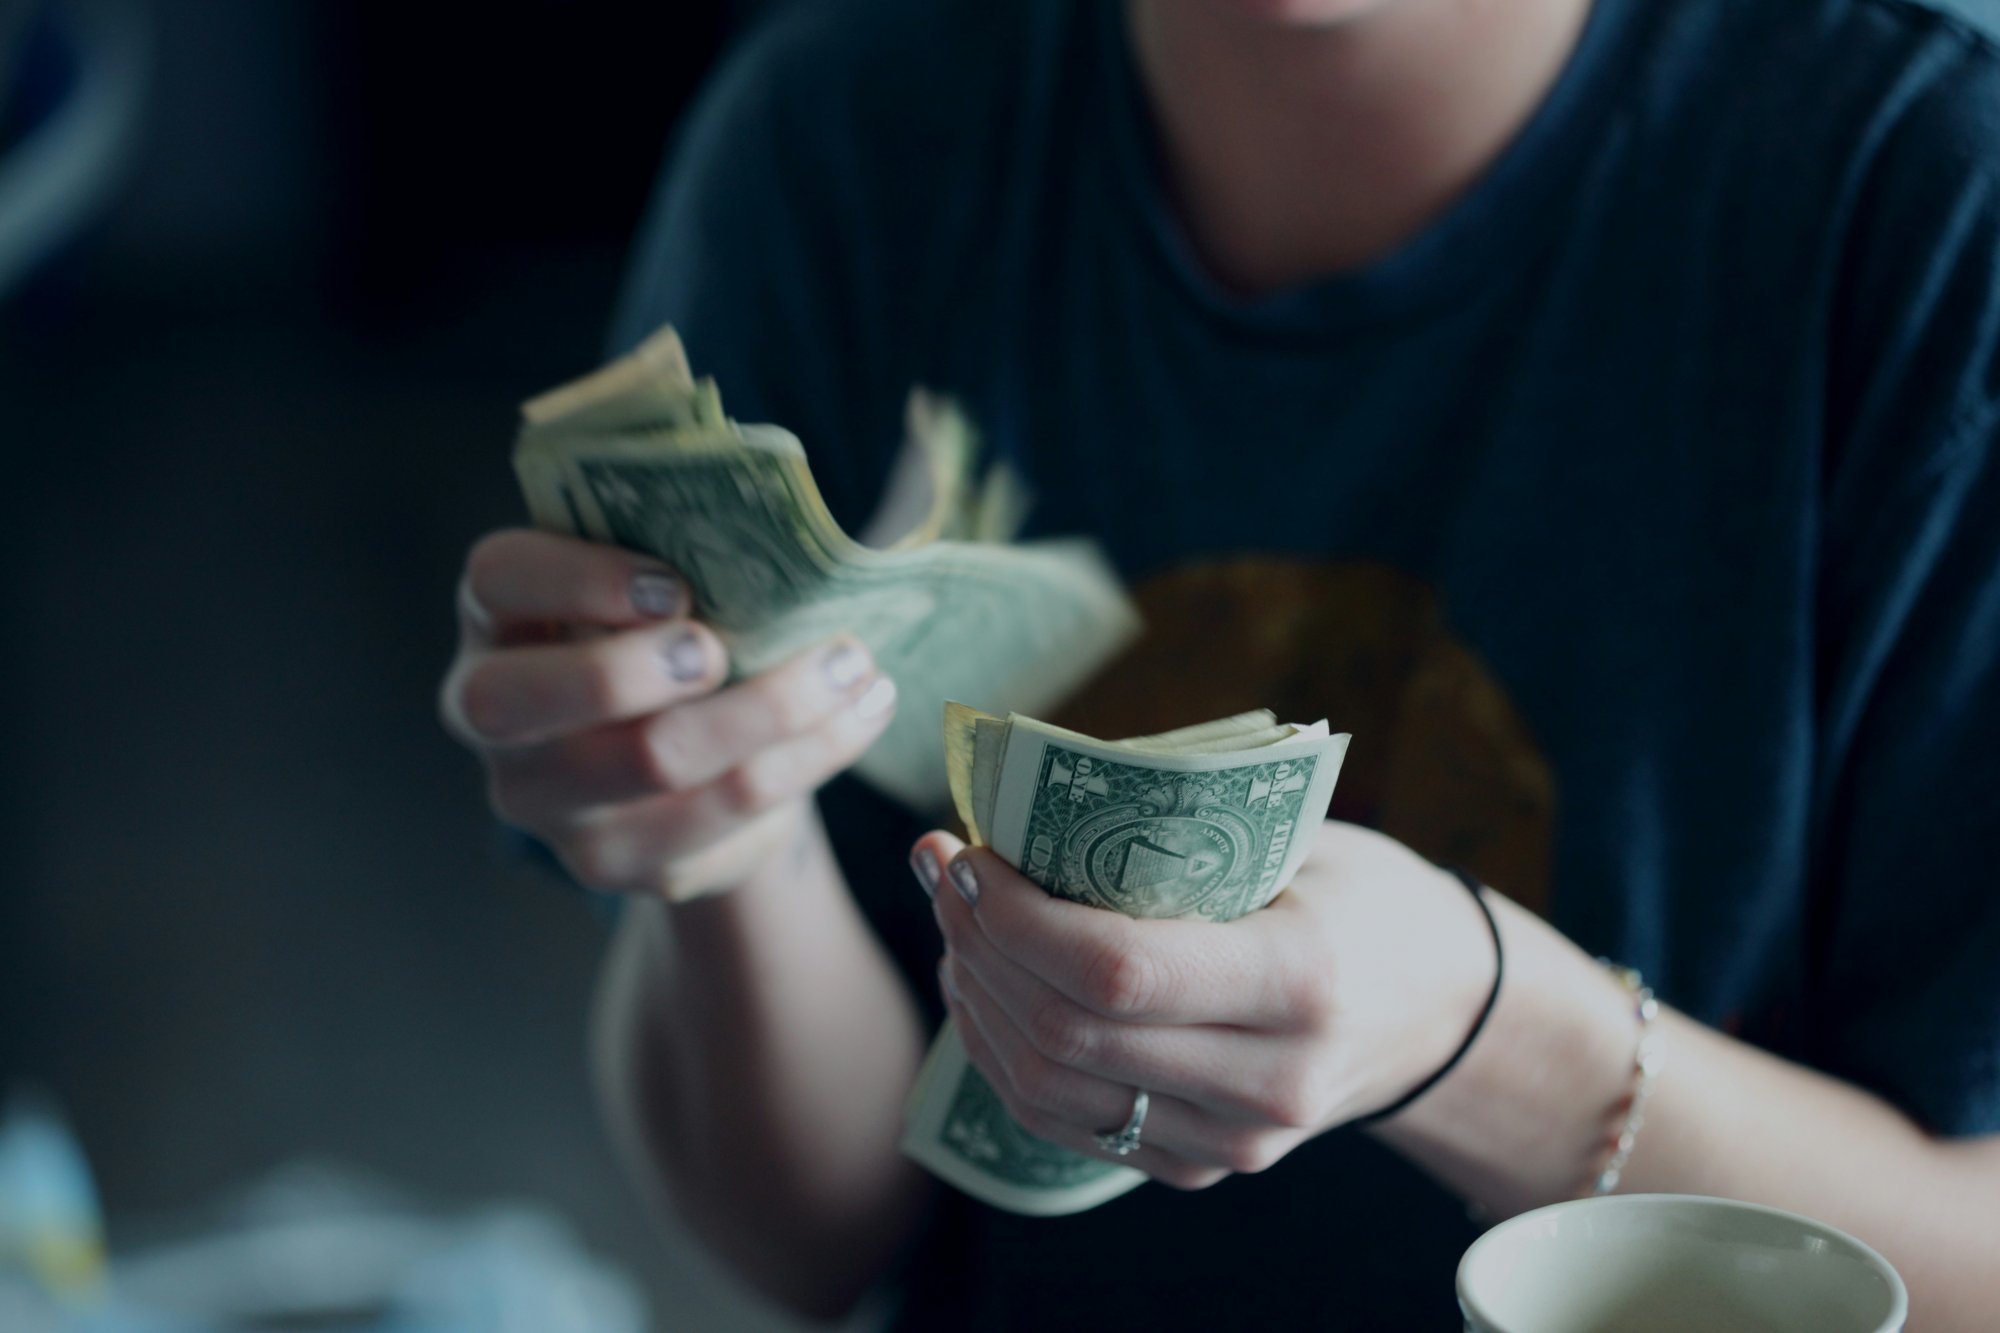 Οικονομικές συμβουλές μέσω TikTok προτιμούν οι νέοι - Η νέα γλώσσα του χρήματος